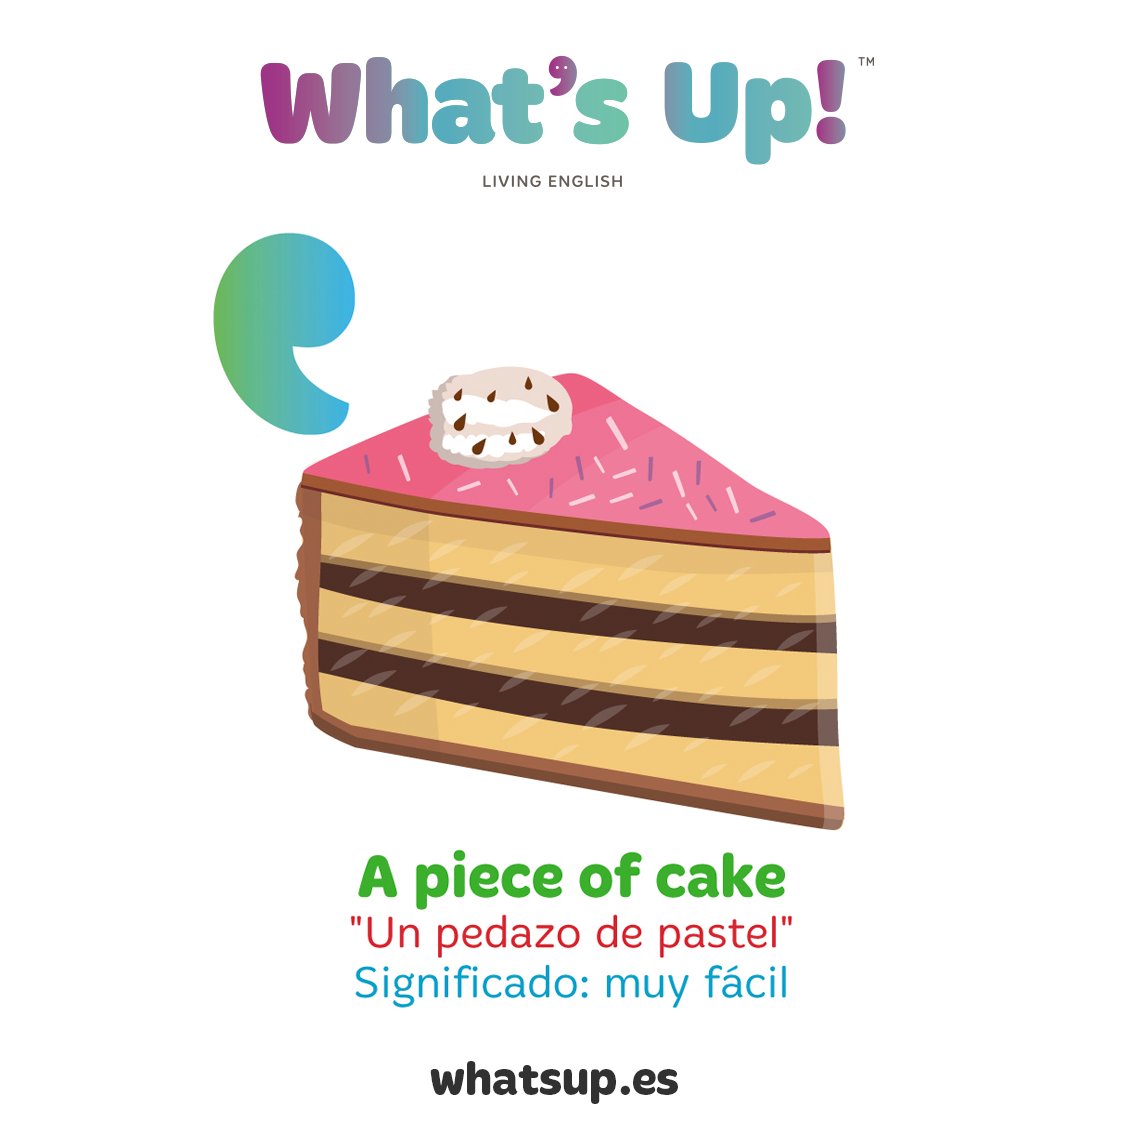 Wise Up - Você sabe o que a expressão piece of cake significa em inglês?  Literalmente, a tradução em português é pedaço de bolo, porém, no Brasil,  usamos outras frases para expressar